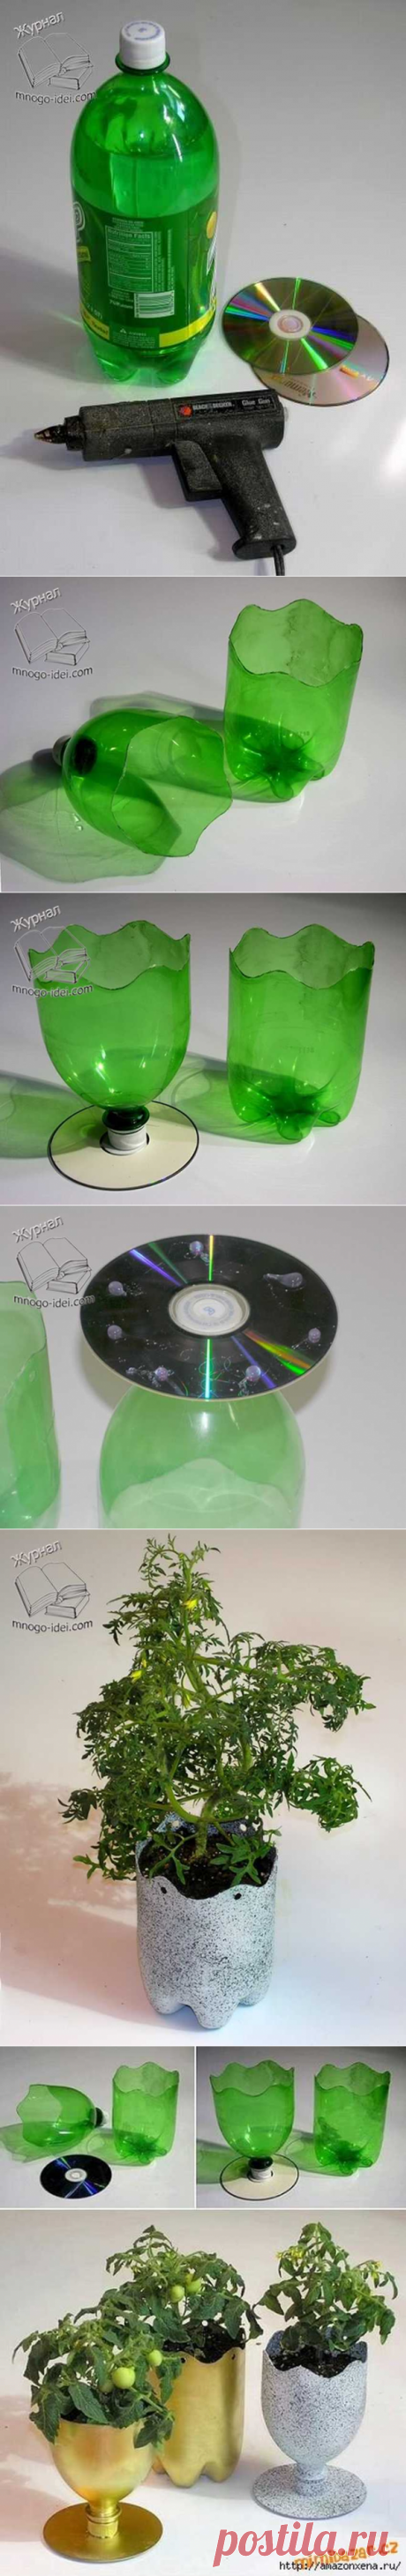 Вазон с подставкой из CD-диска